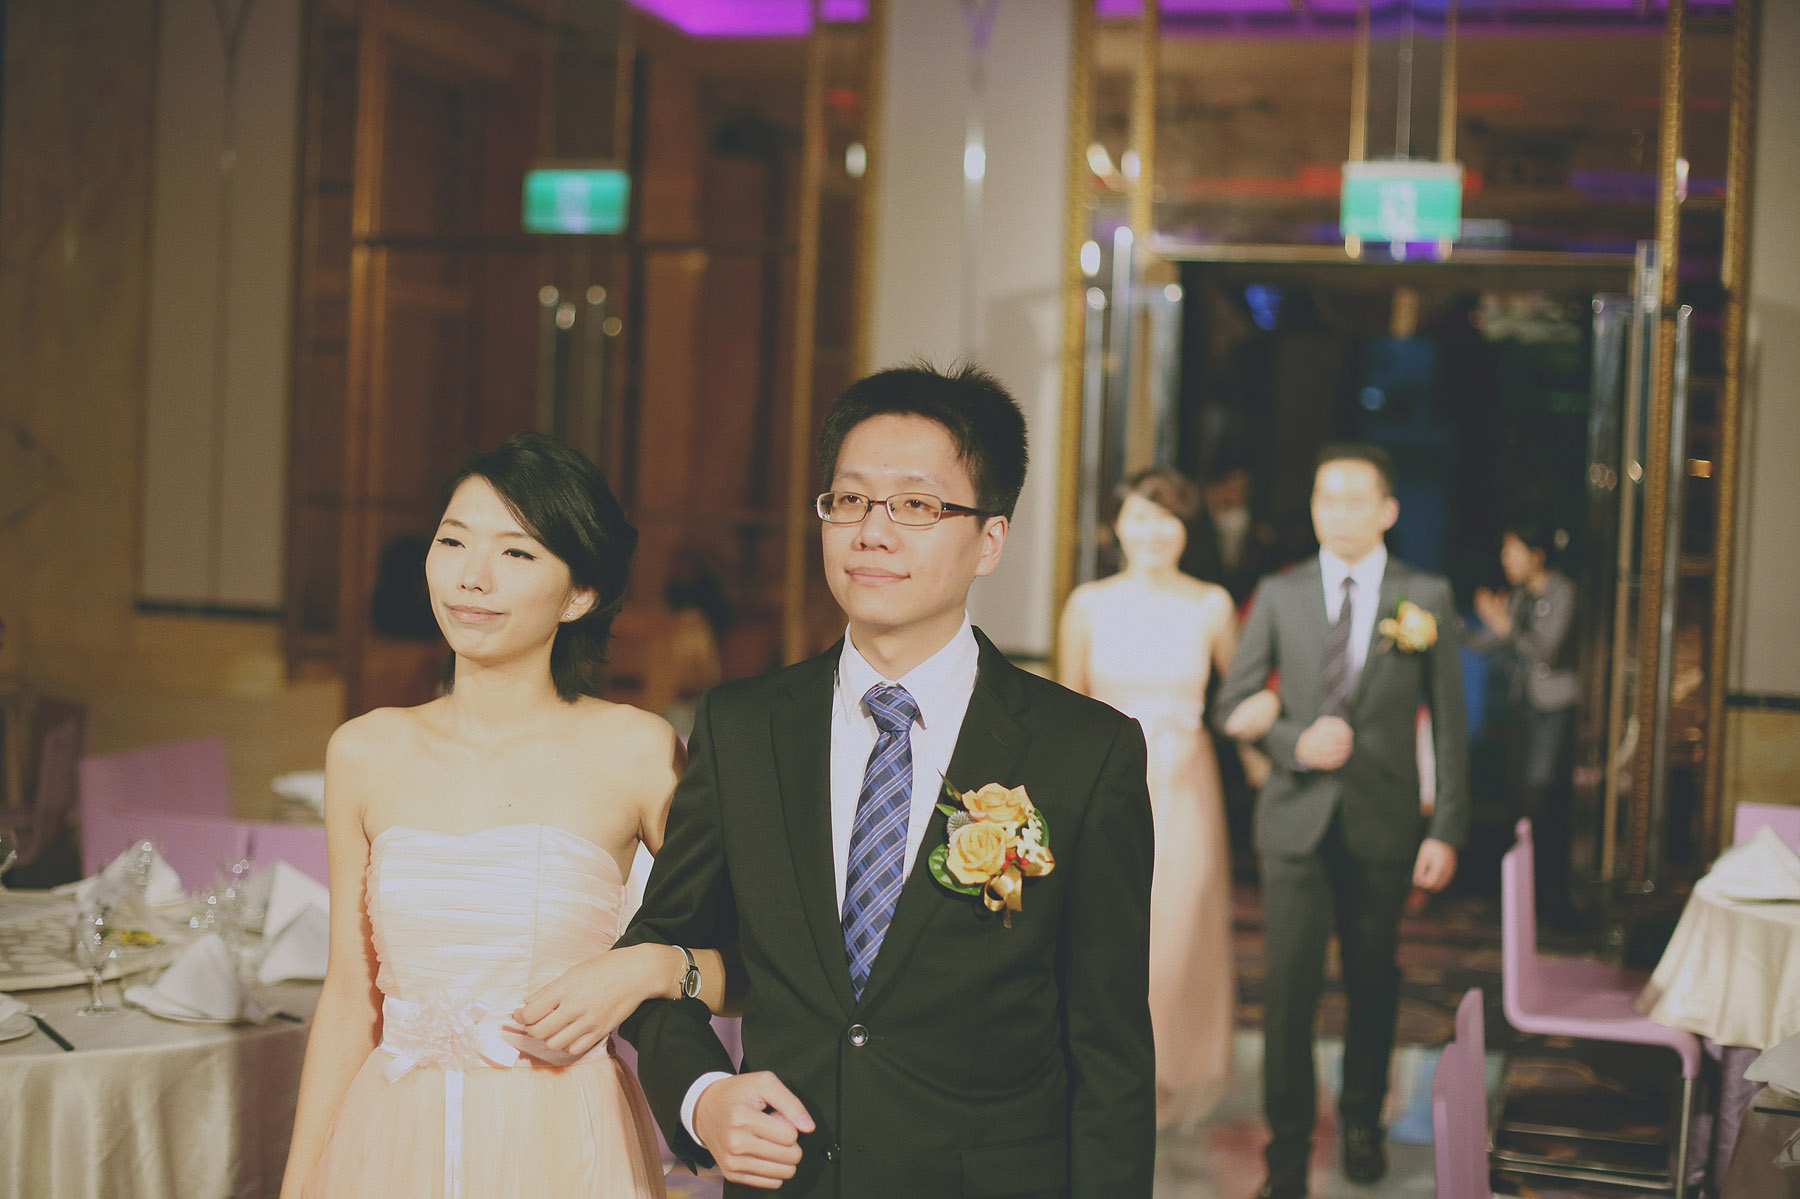 婚禮攝影,婚攝,婚禮紀錄,推薦,台北,晶宴會館,自然,底片風格